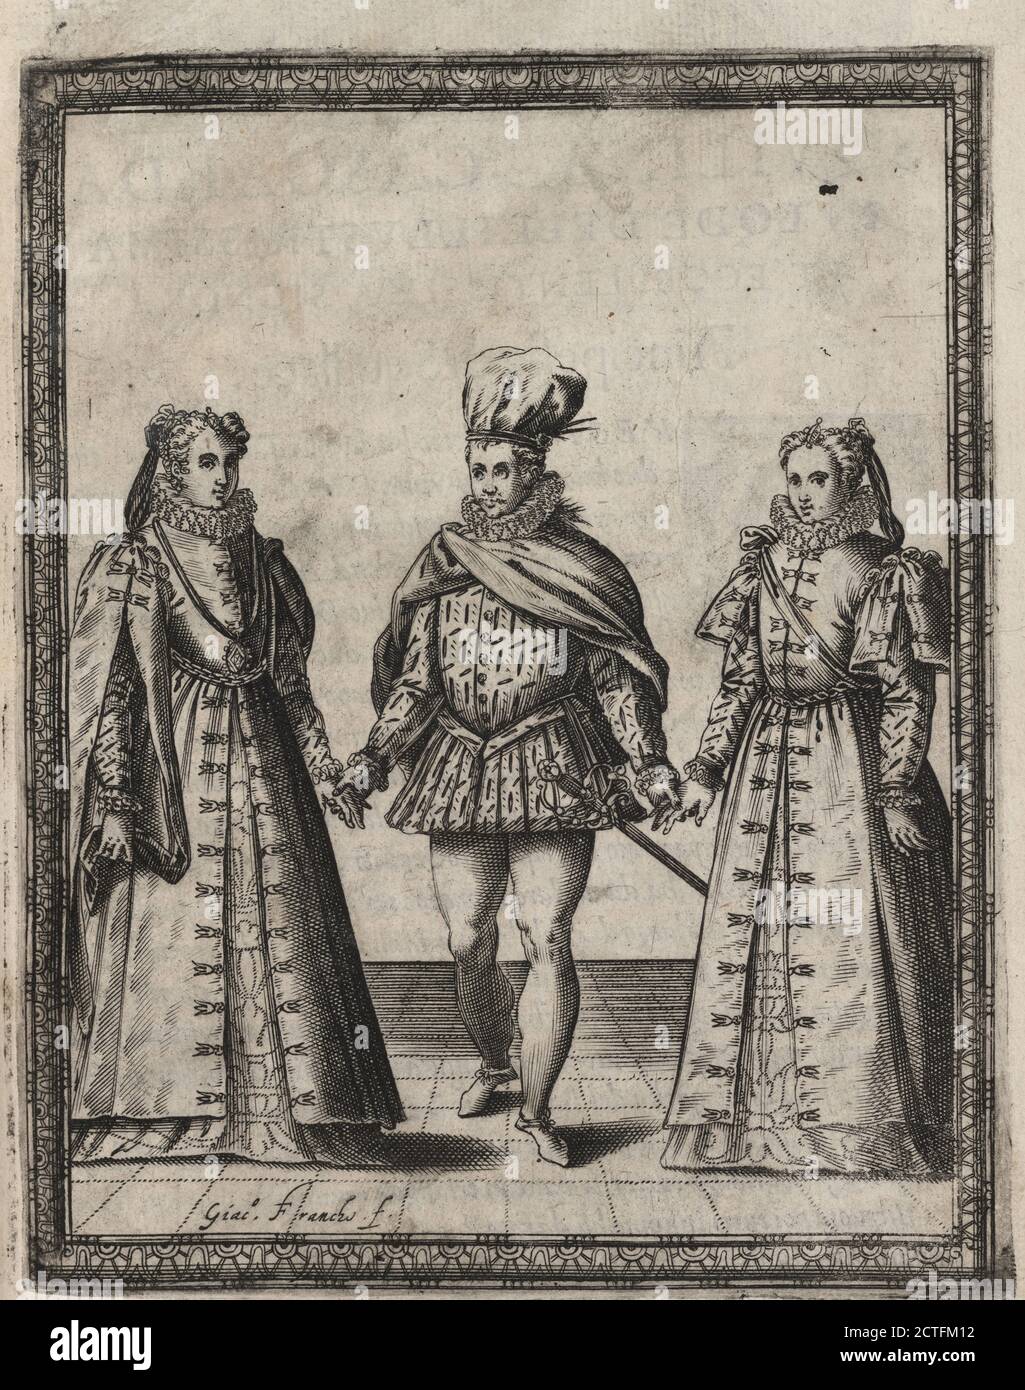 Sqvilia Cascarda, still image, Prints, 1581 Stock Photo